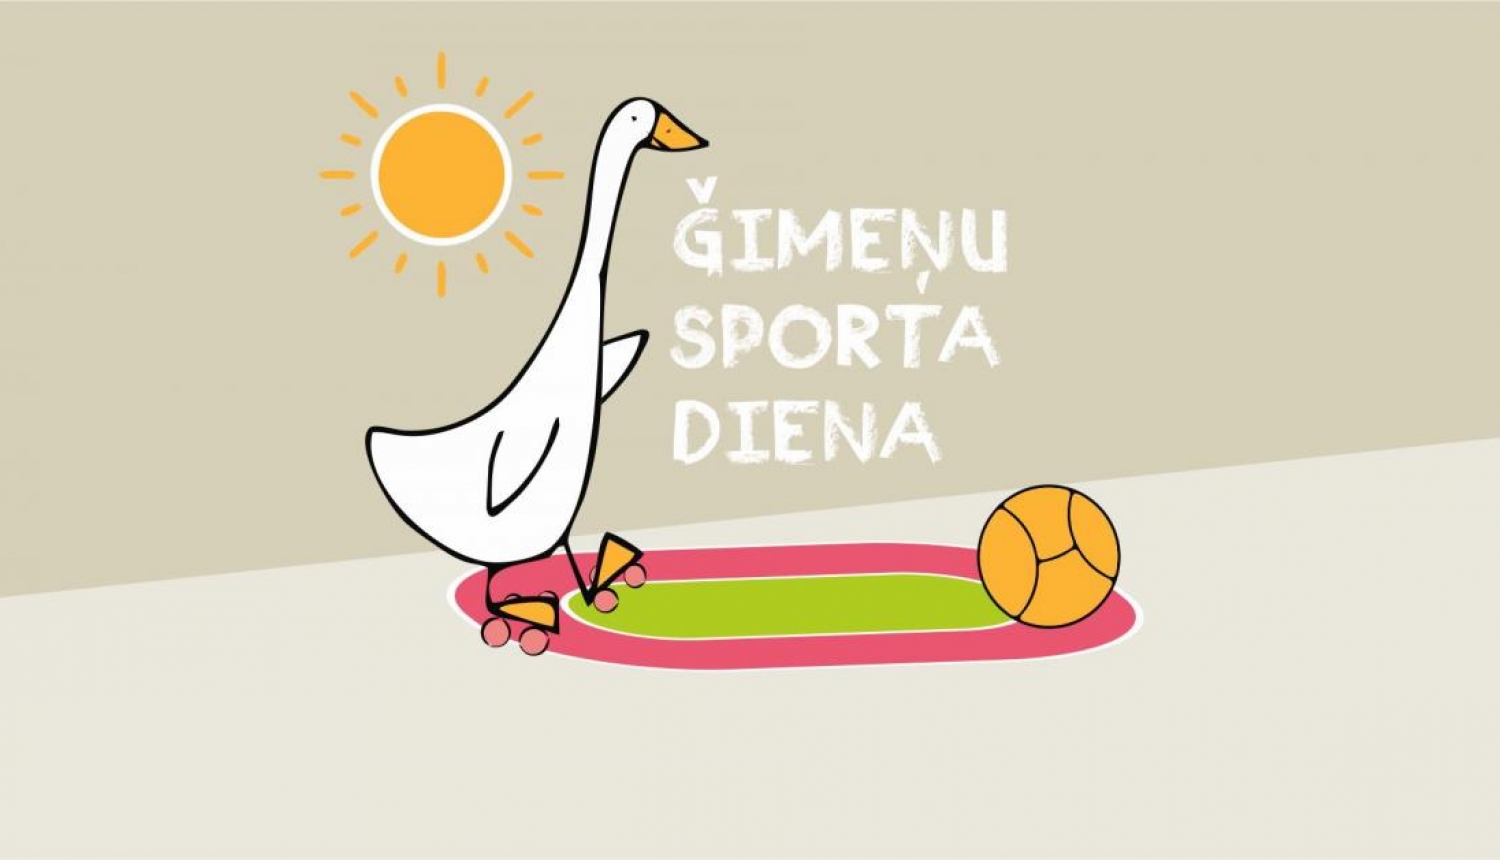 Ģimeņu sporta diena ilustrācija